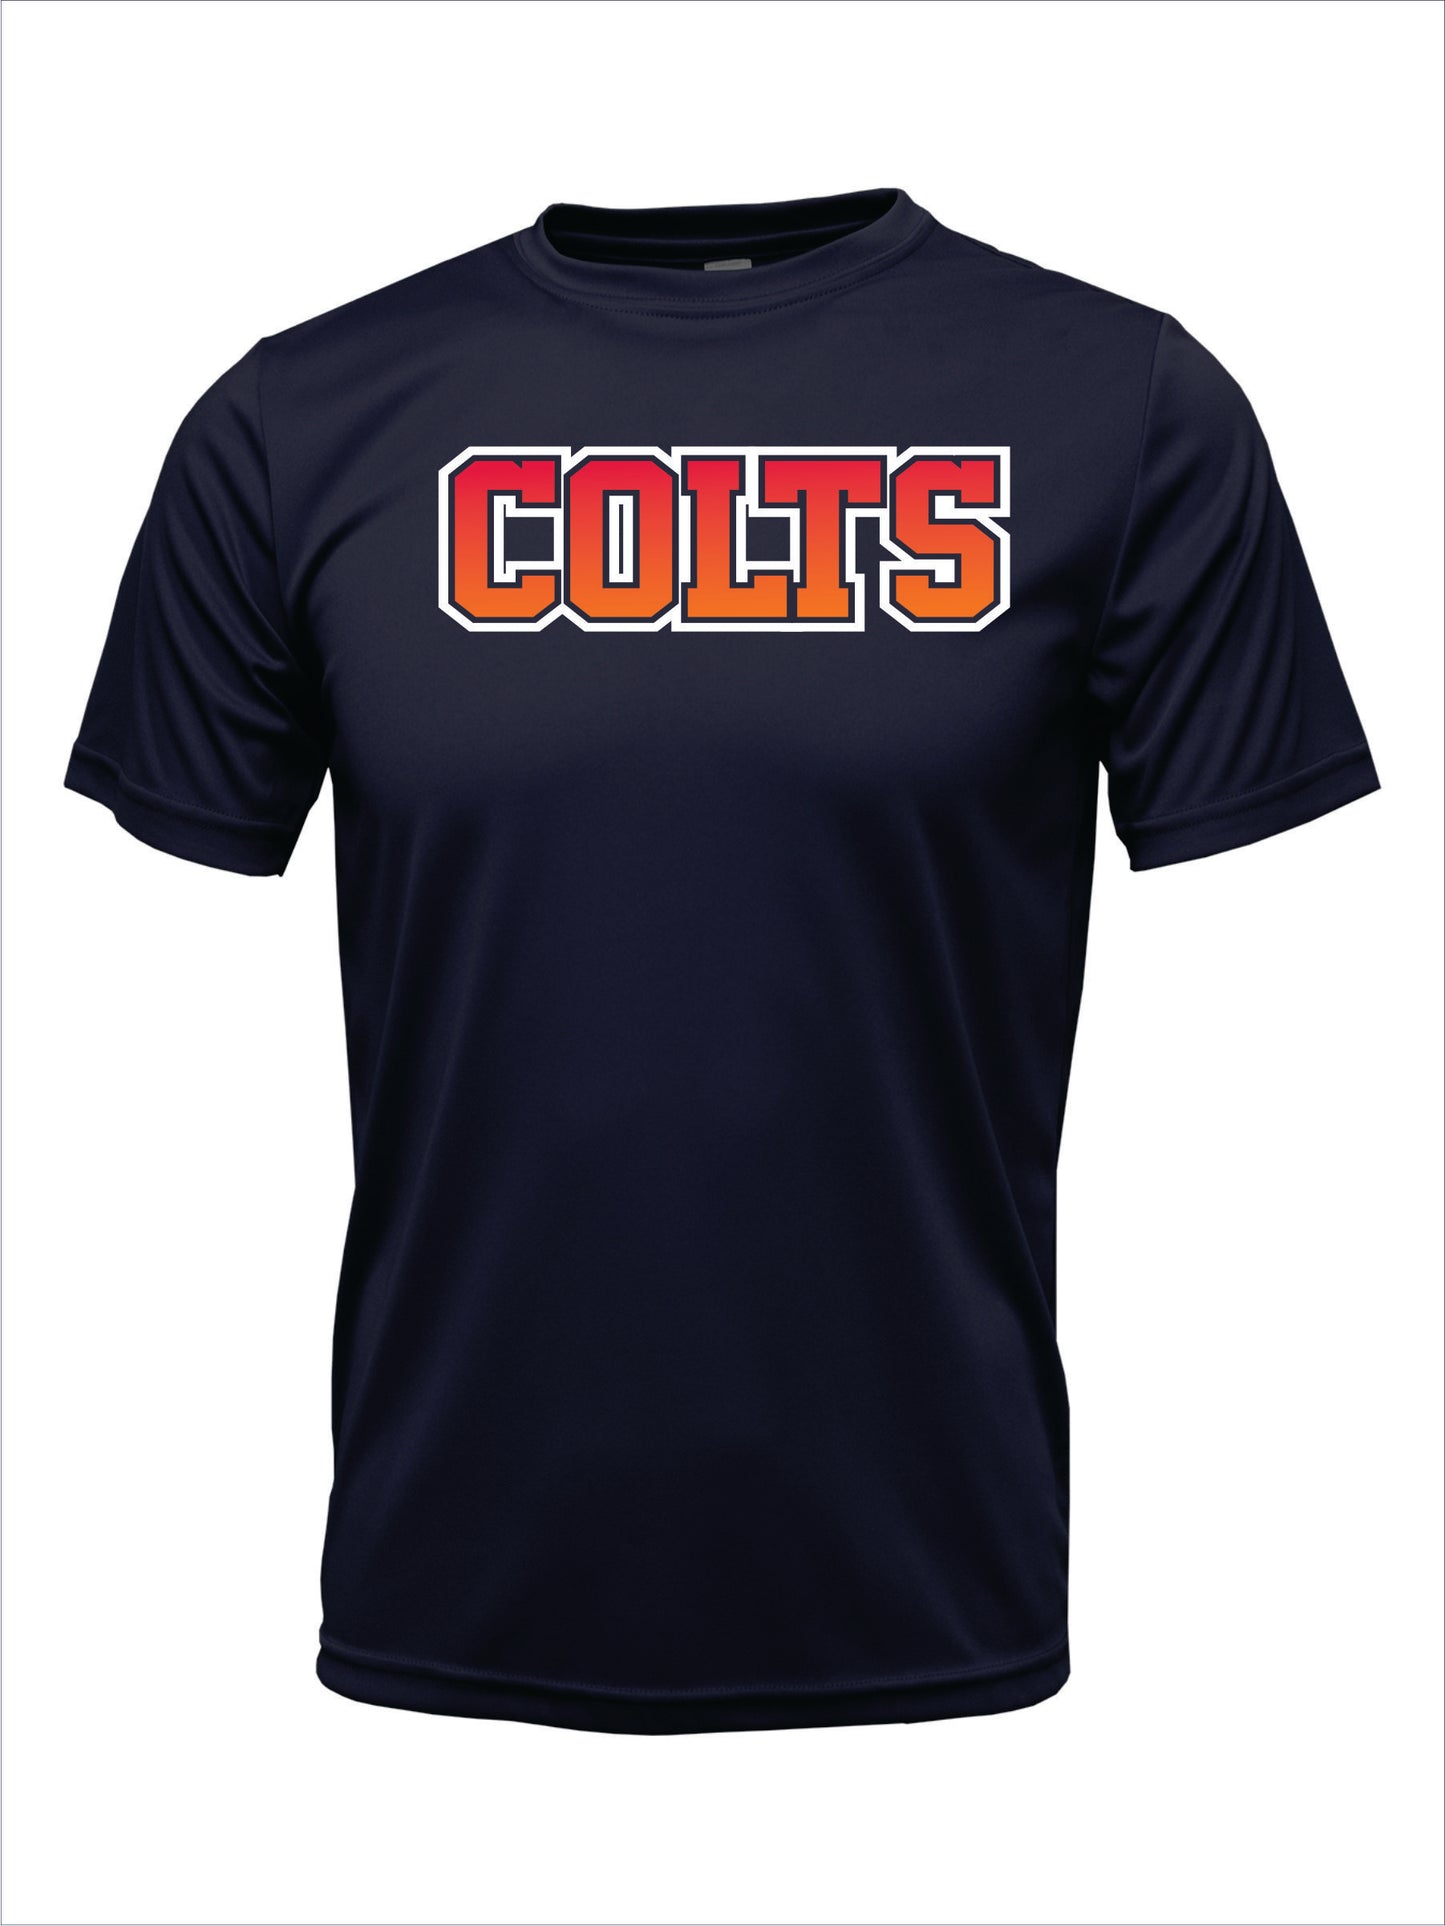 Colts "Astros" Cotton T-shirt